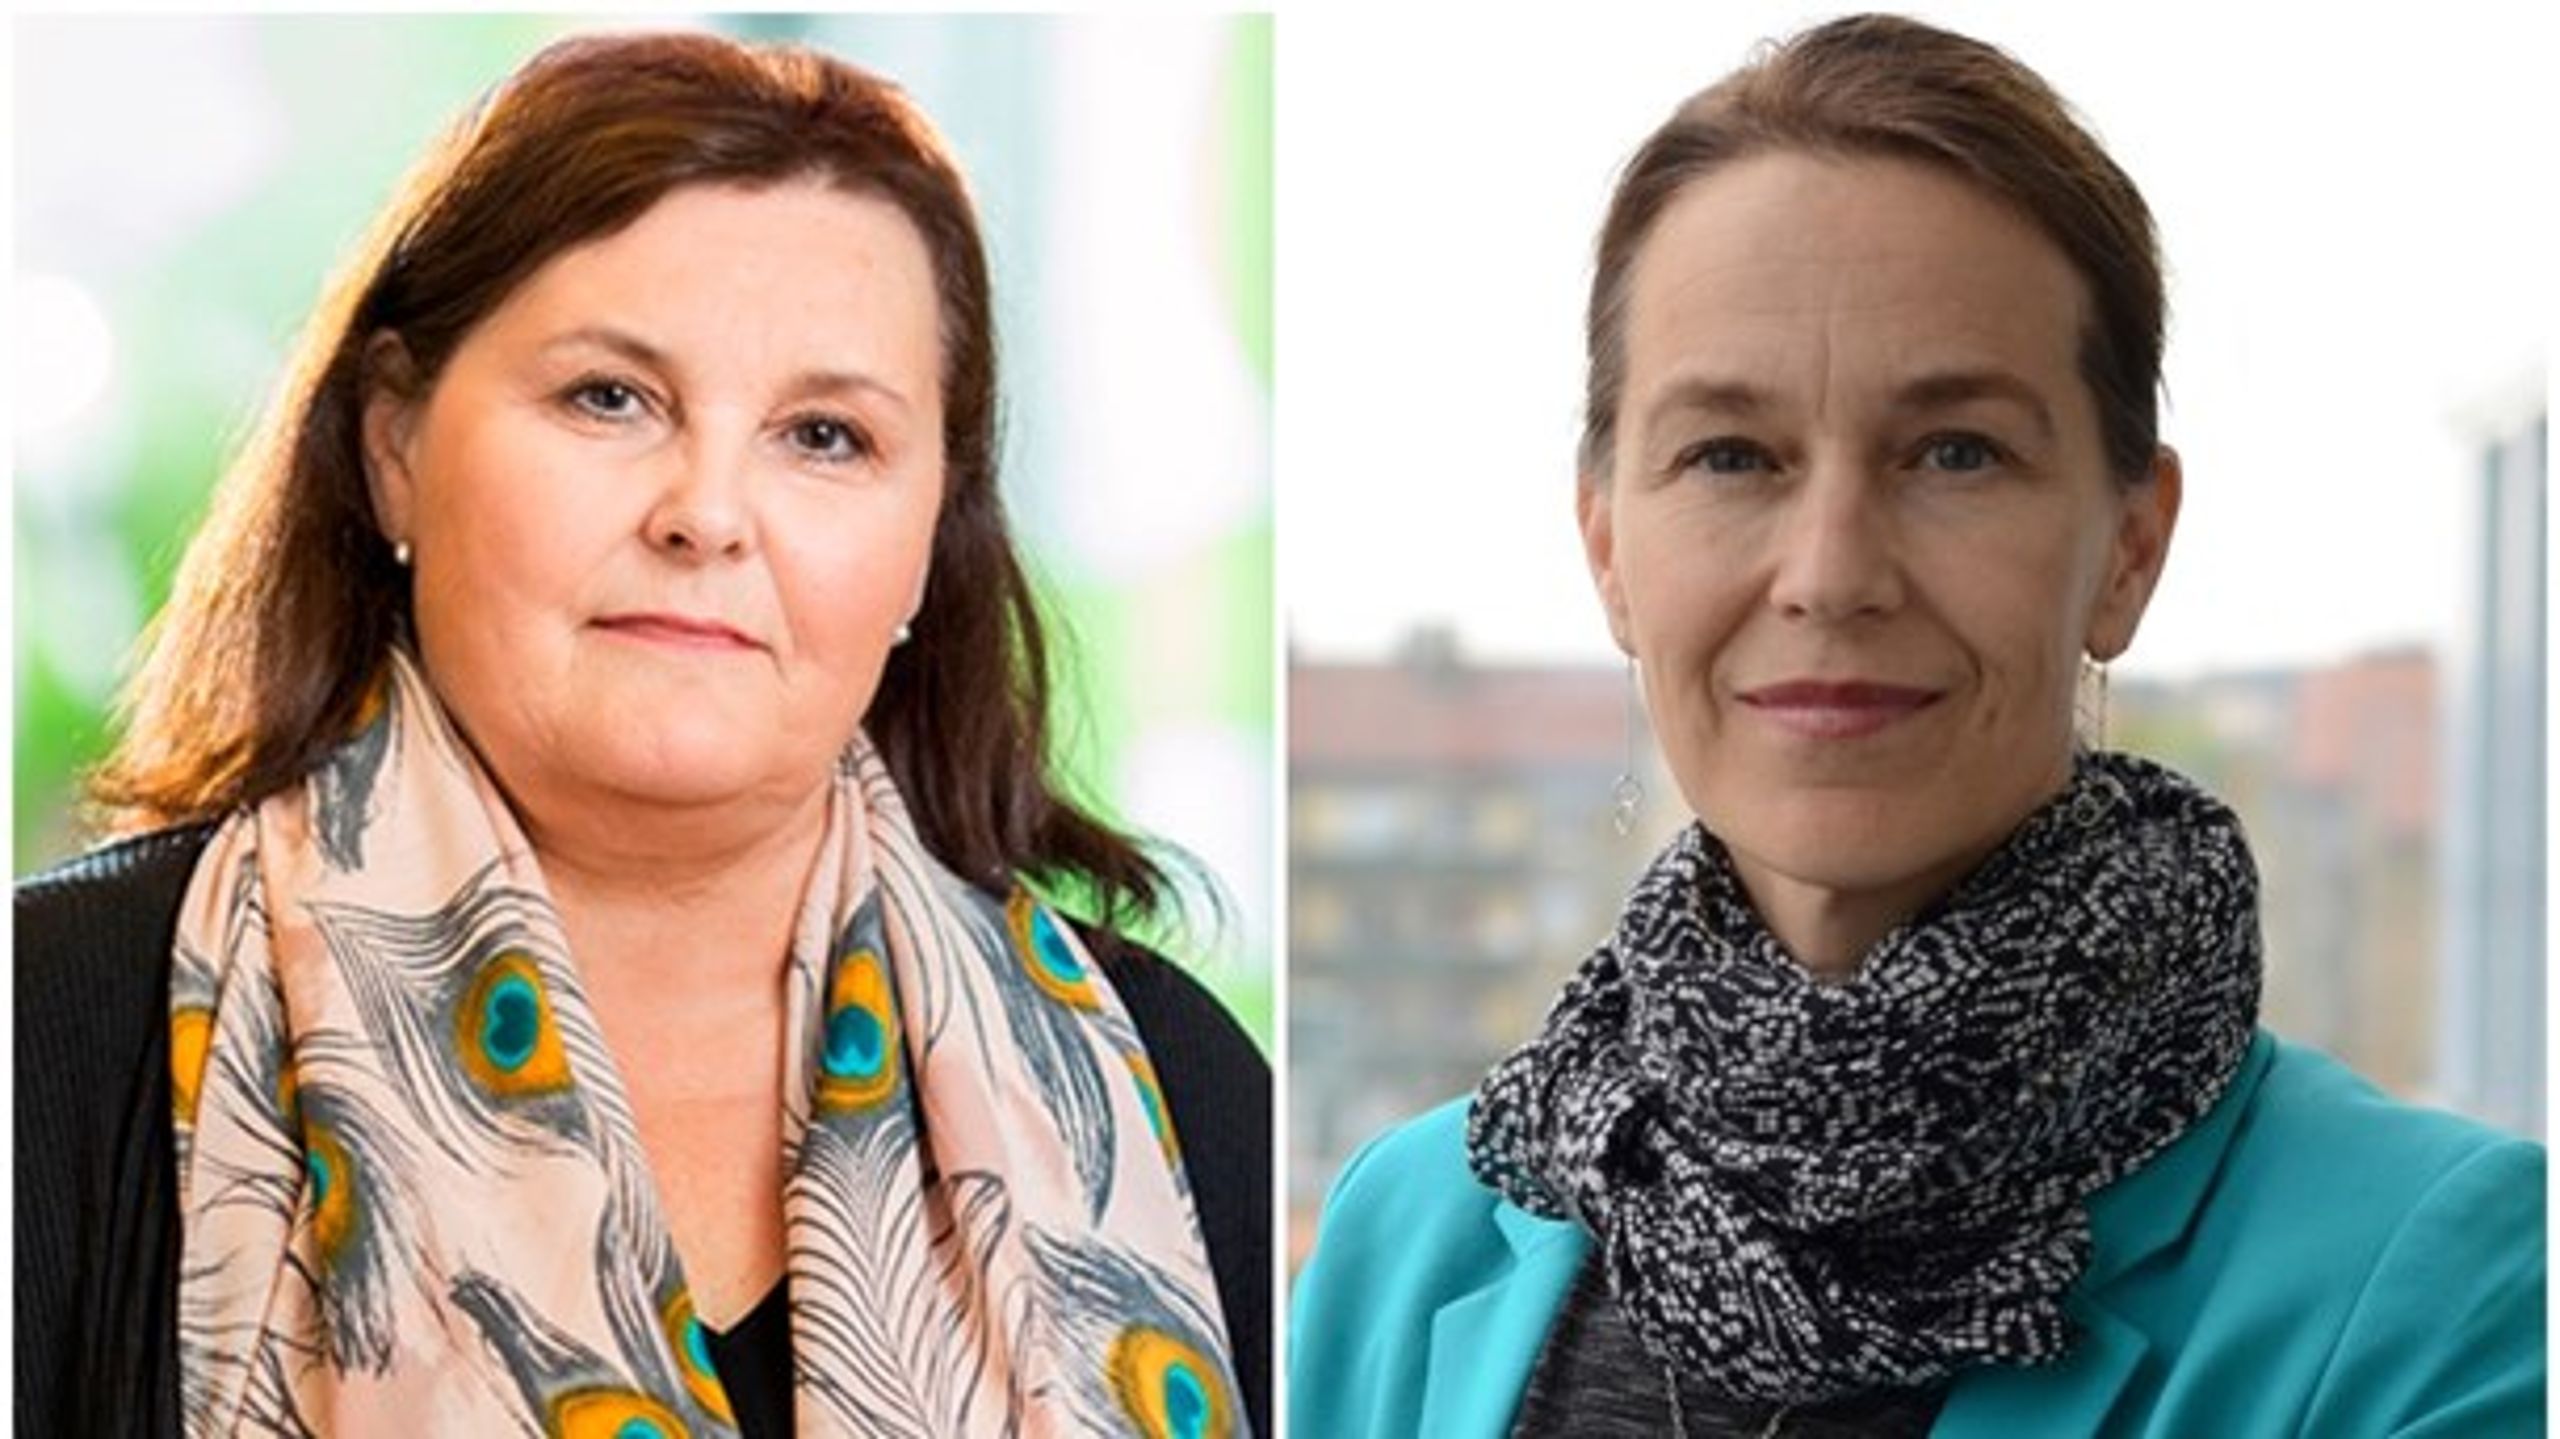 Janna Valik, generaldirektör vid E-hälsomyndigheten och Olivia Wigzell, generaldirektör vid Socialstyrelsen.